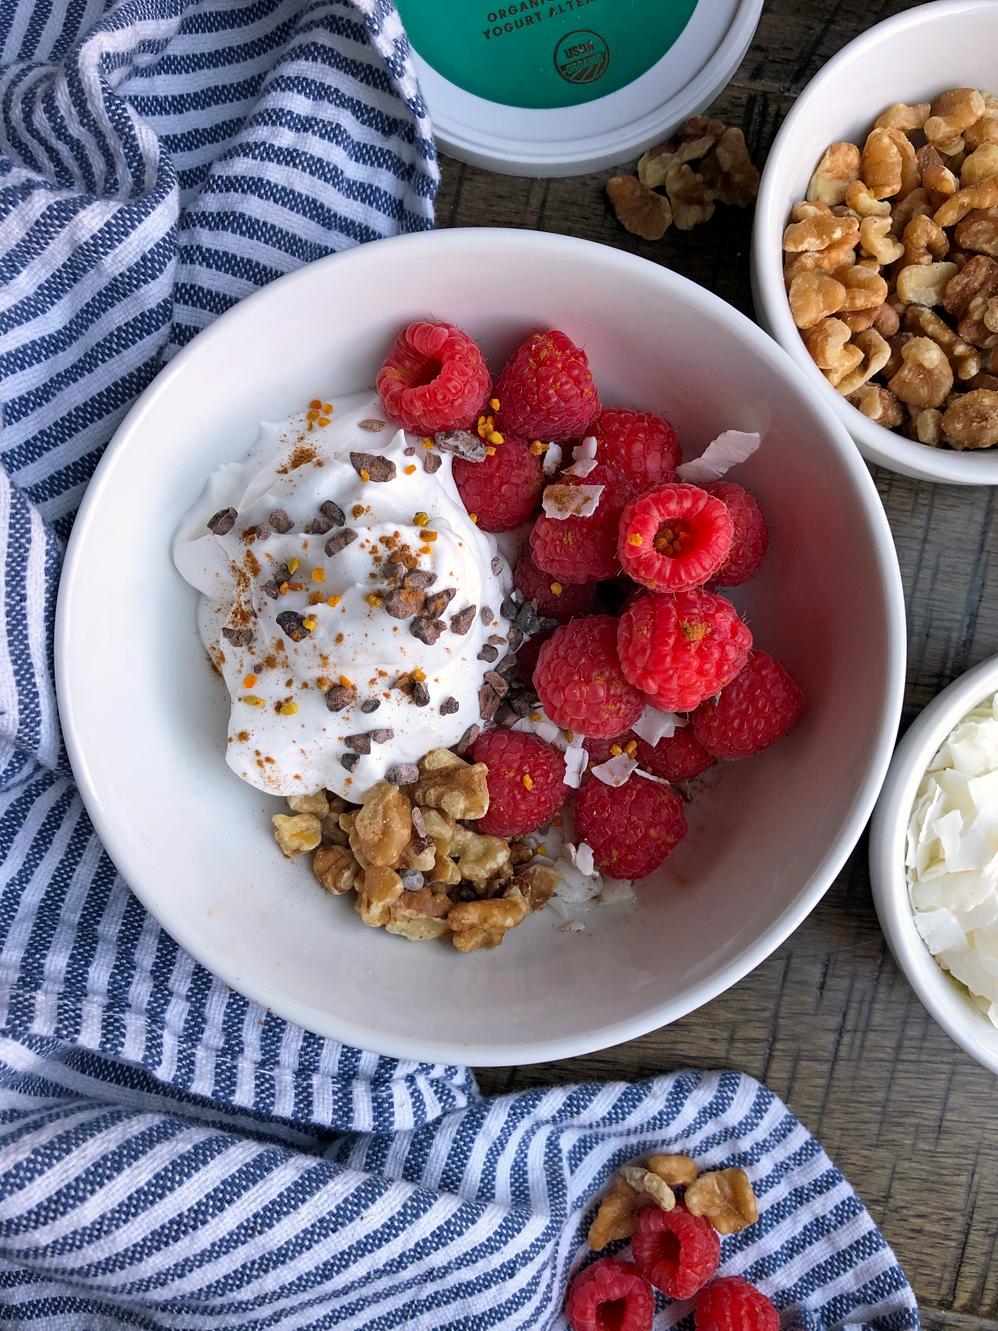 Delicious Coconut Yogurt Recipe for a Healthy Breakfast